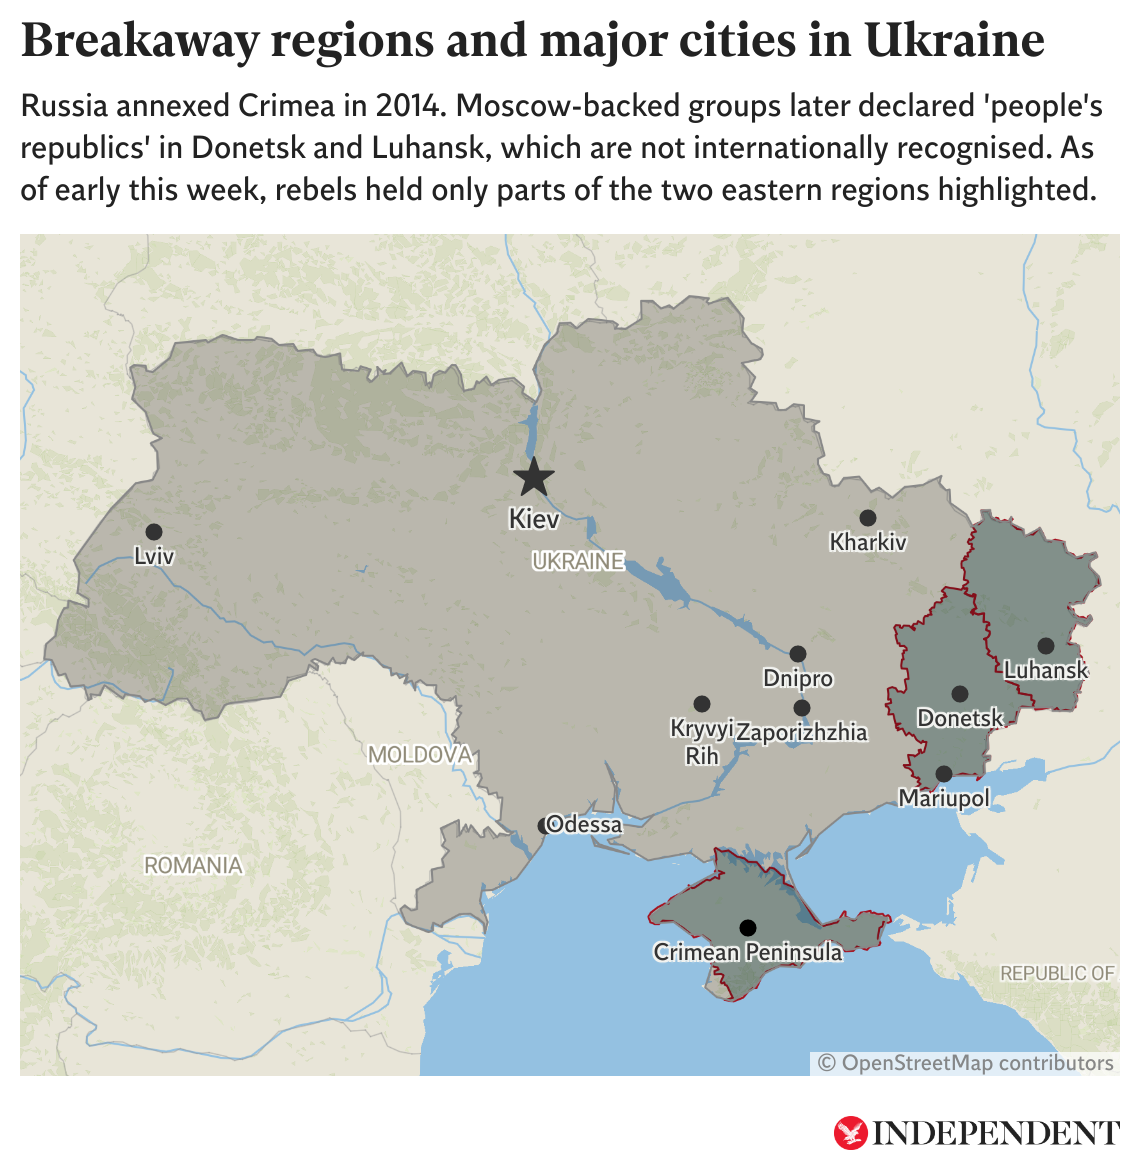 Este mapa muestra las ciudades ucranianas donde hay un mayor nivel de crisis, así como las regiones separatistas respaldadas por Moscú. map shows major cities in Ukraine as well as Moscow-backed separatist regions. A inicios de esta semana, los rebeldes retuvieron partes de las regiones de Donetsk y Lugansk que están resaltadas